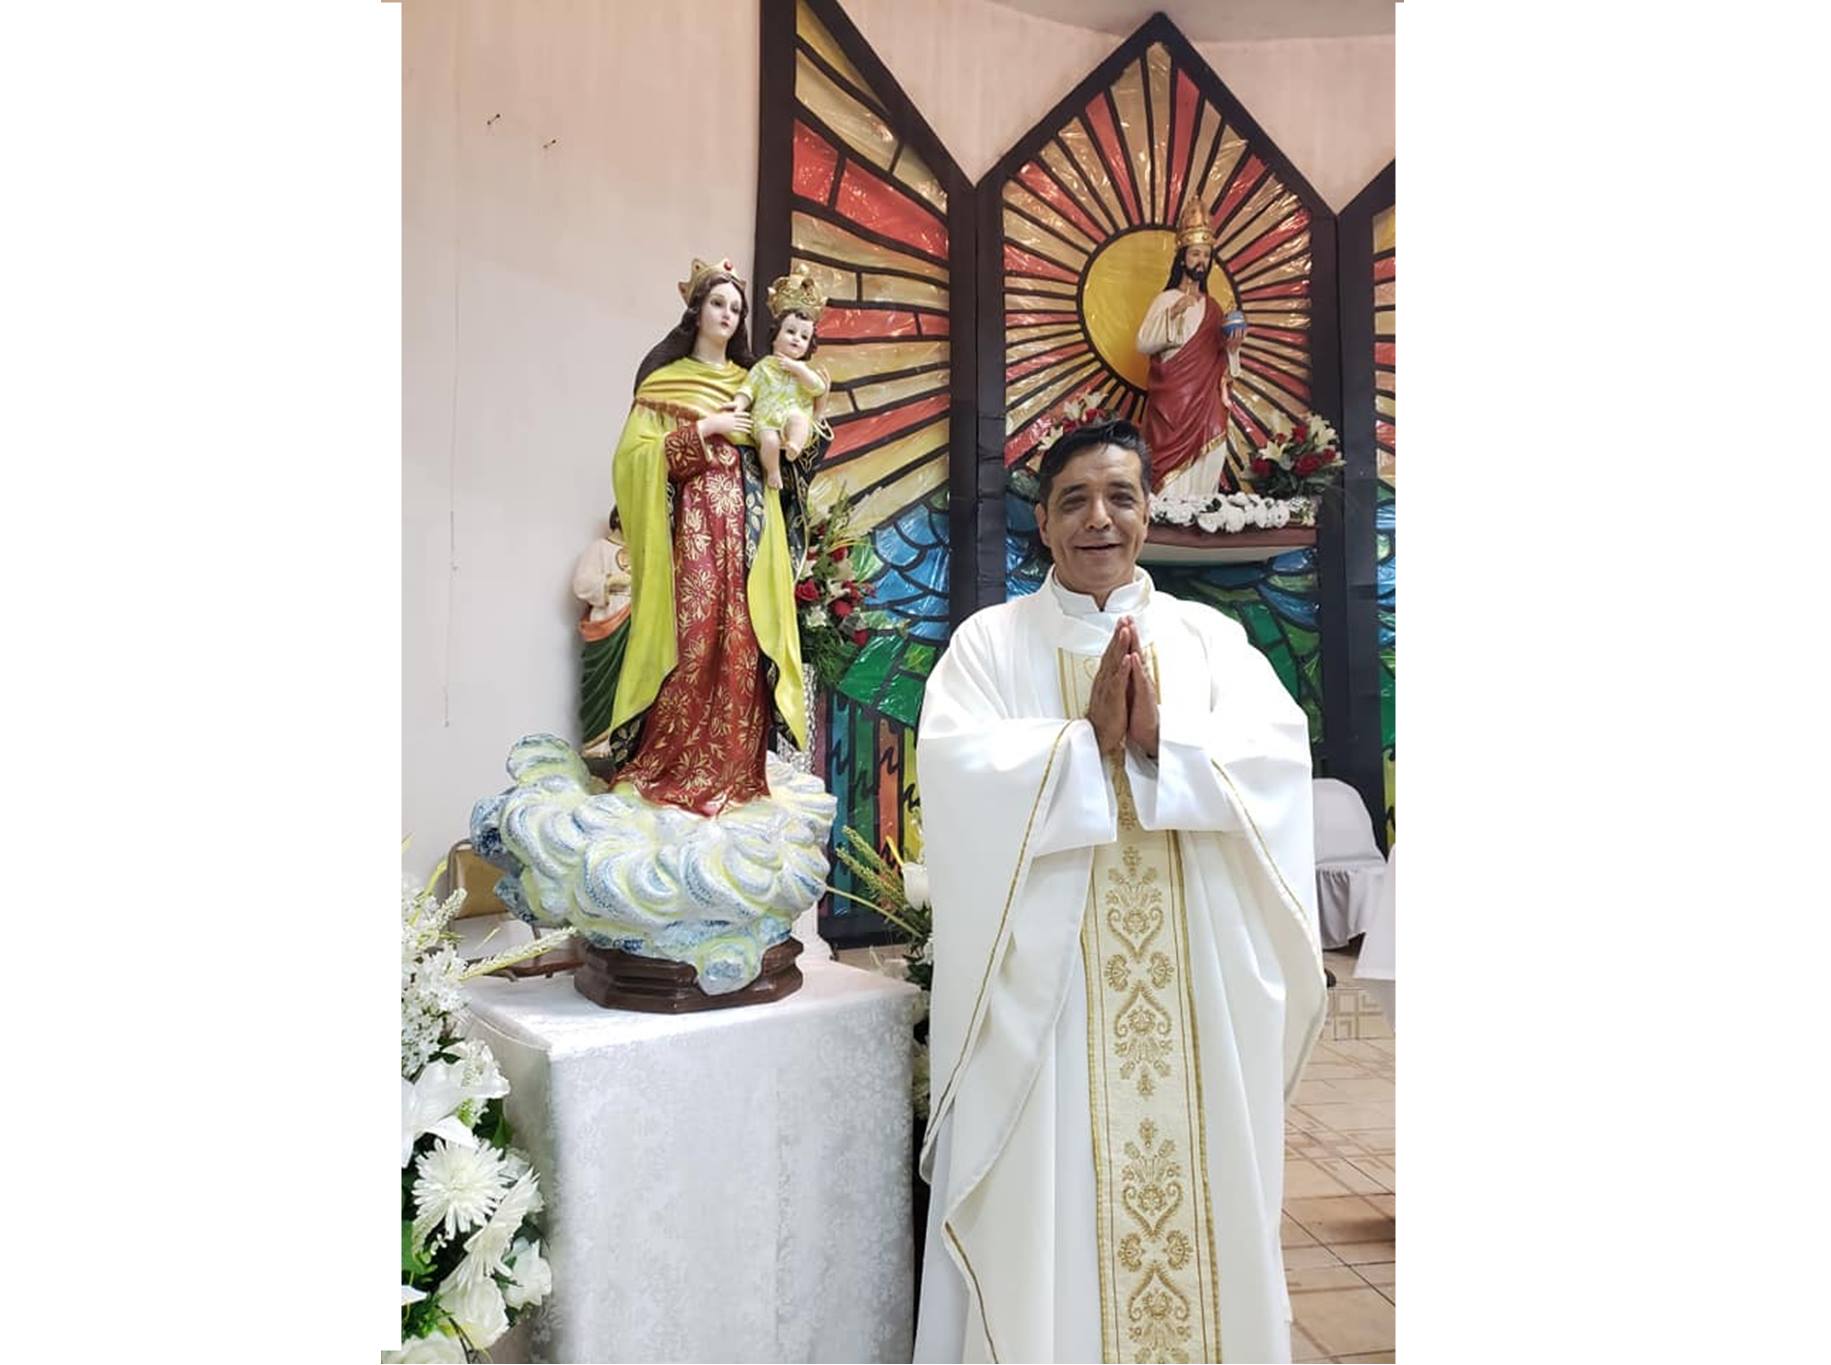 Matan a sacerdote católico en Matamoros